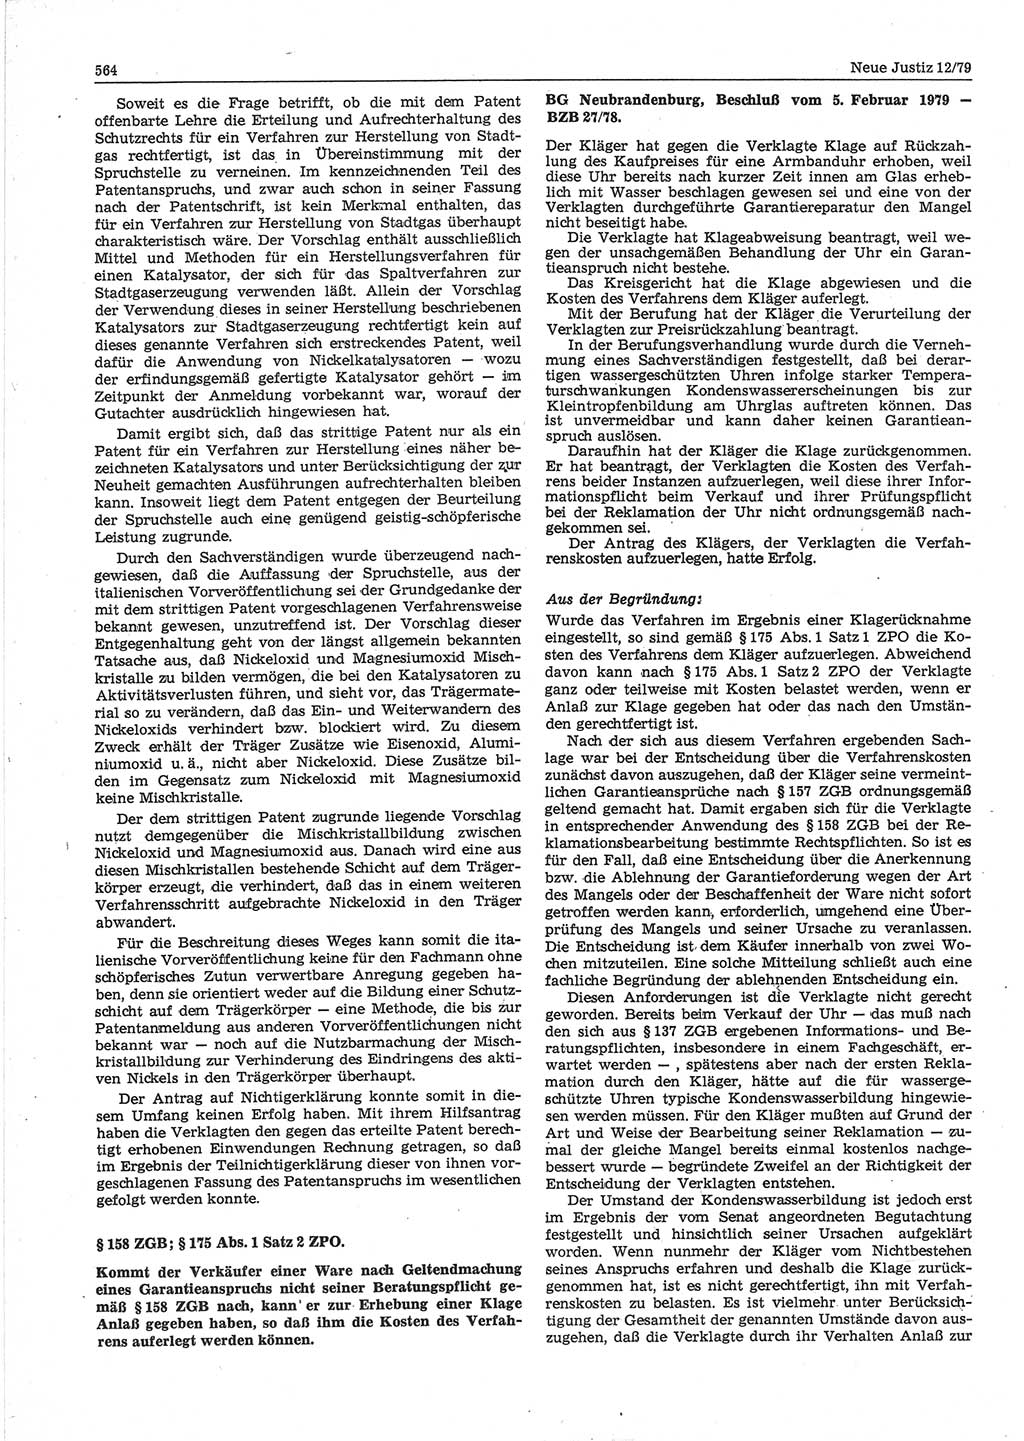 Neue Justiz (NJ), Zeitschrift für sozialistisches Recht und Gesetzlichkeit [Deutsche Demokratische Republik (DDR)], 33. Jahrgang 1979, Seite 564 (NJ DDR 1979, S. 564)